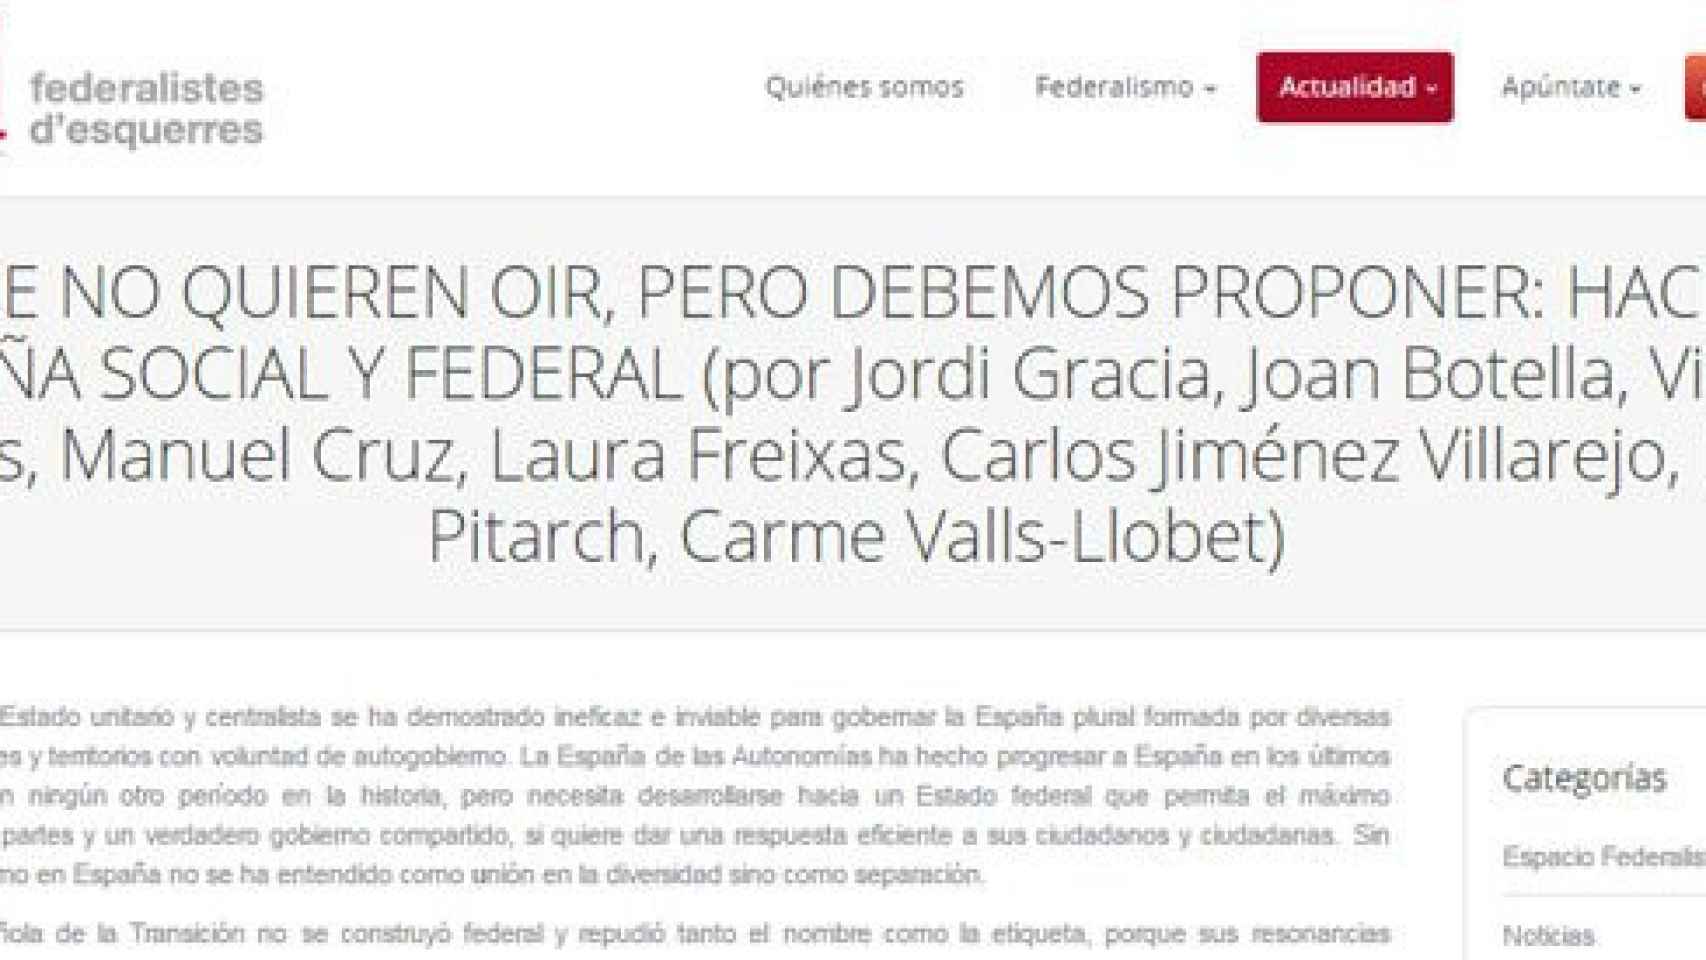 'Lo que no quieren oír, pero debemos proponer: hacia una España social y federal', nuevo manifiesto promovido por Federalistes d'Esquerras